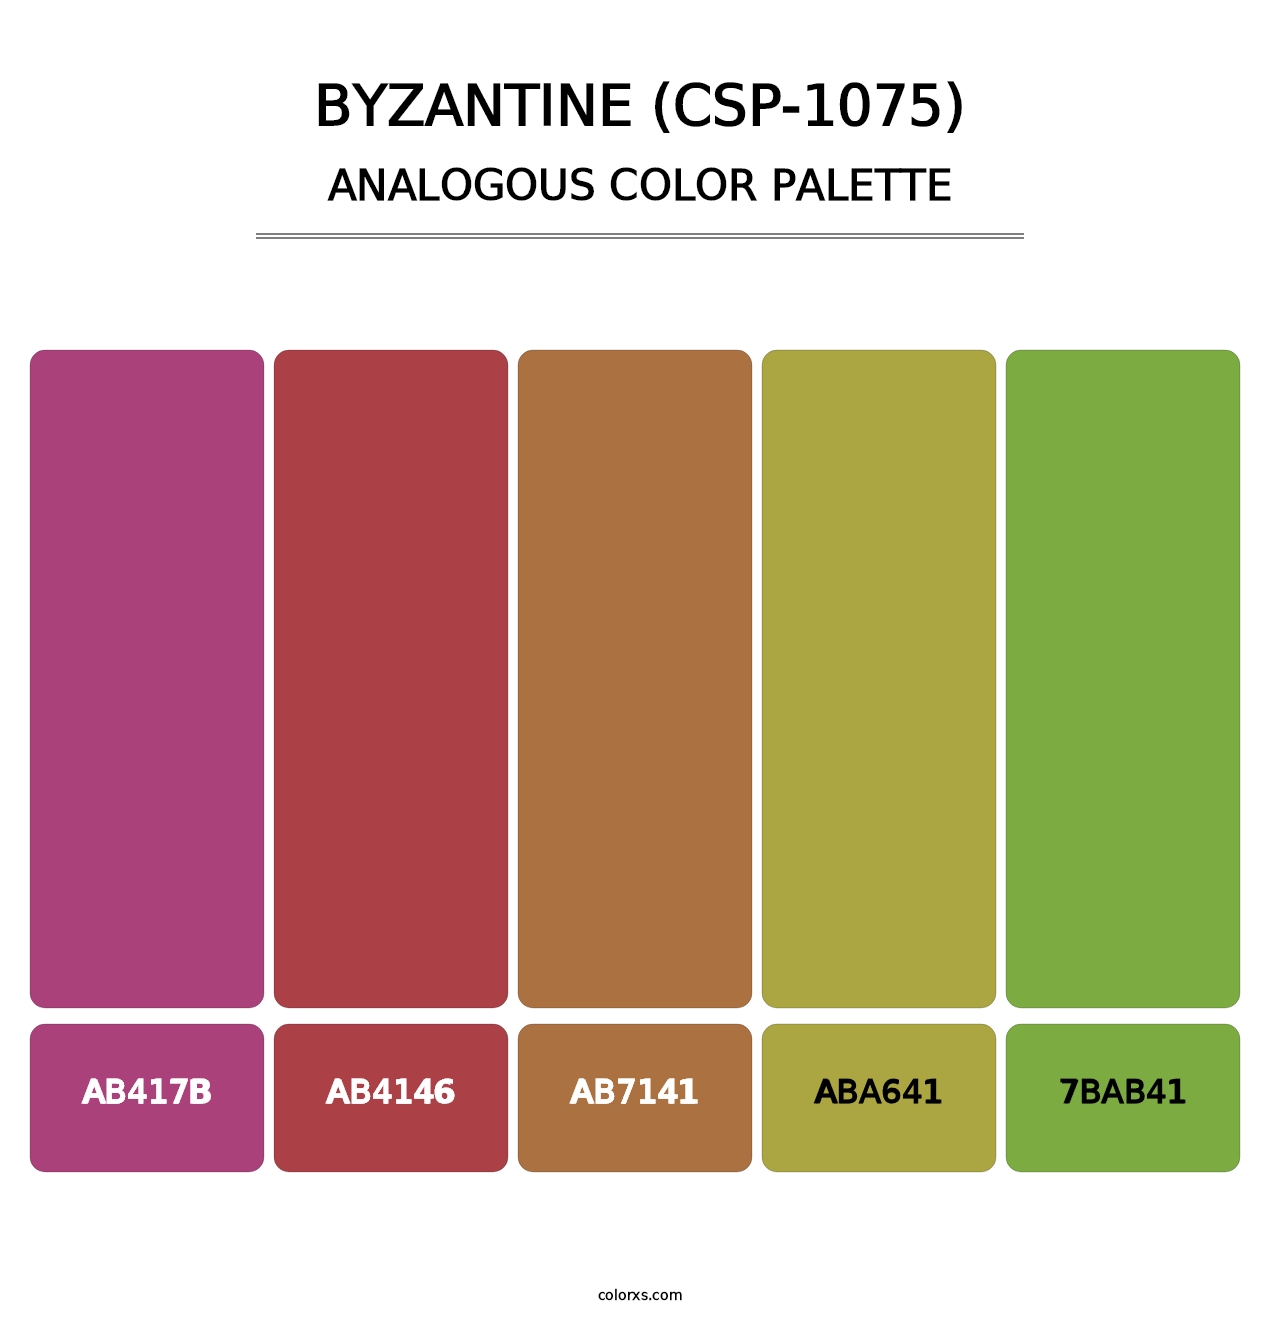 Byzantine (CSP-1075) - Analogous Color Palette